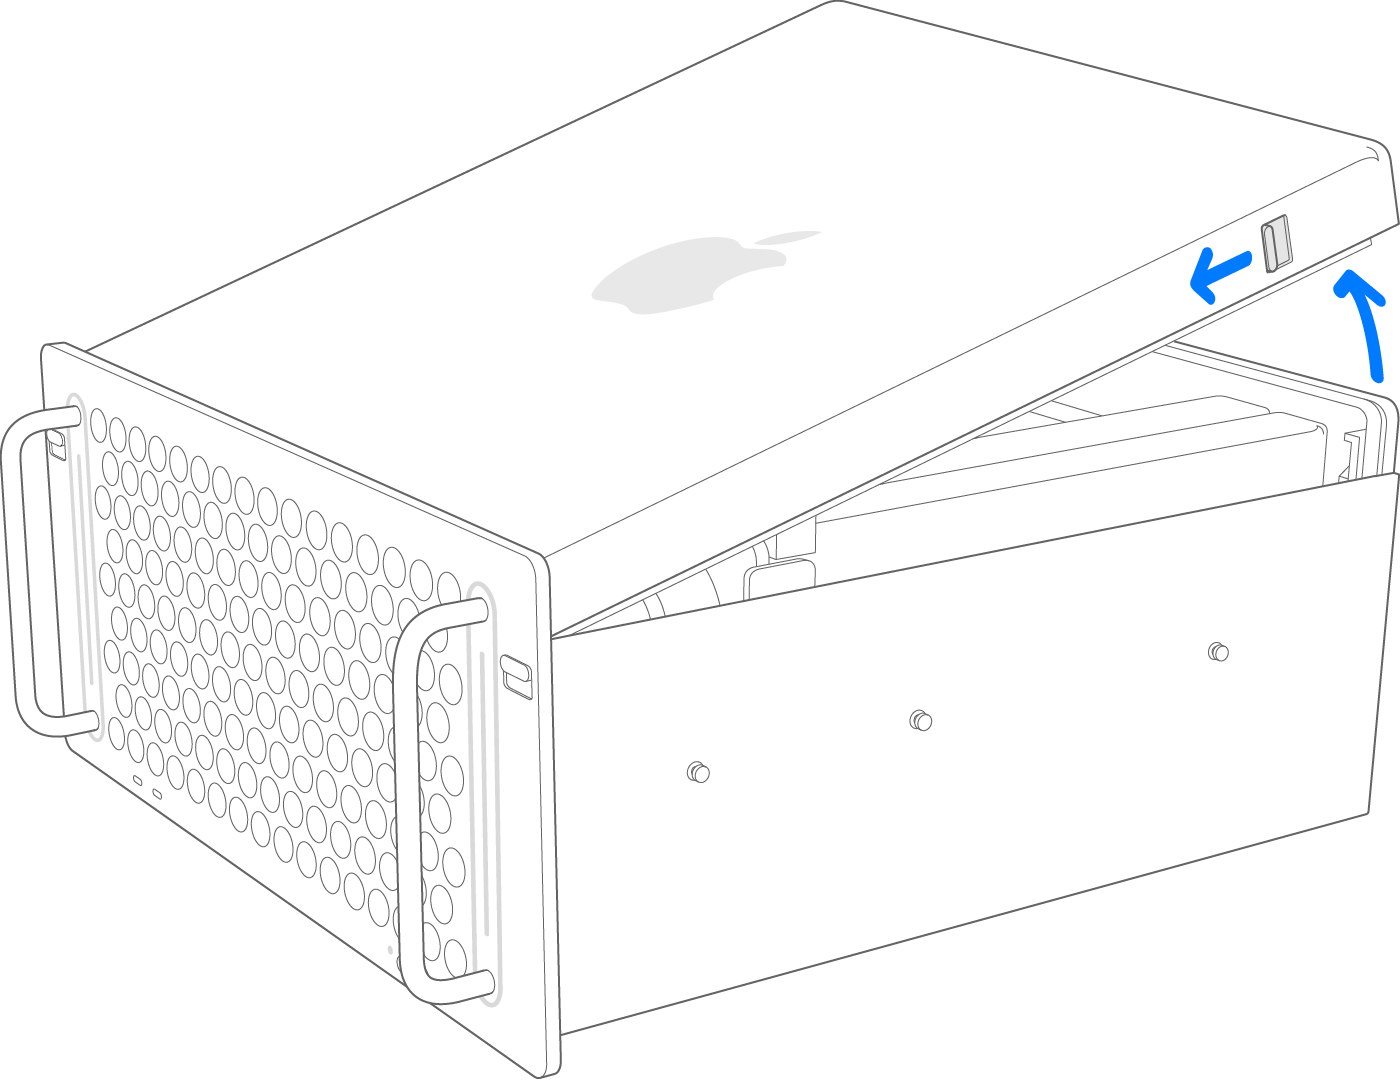 2019년 Mac Pro 다이아그램 랙 상단 덮개 분리